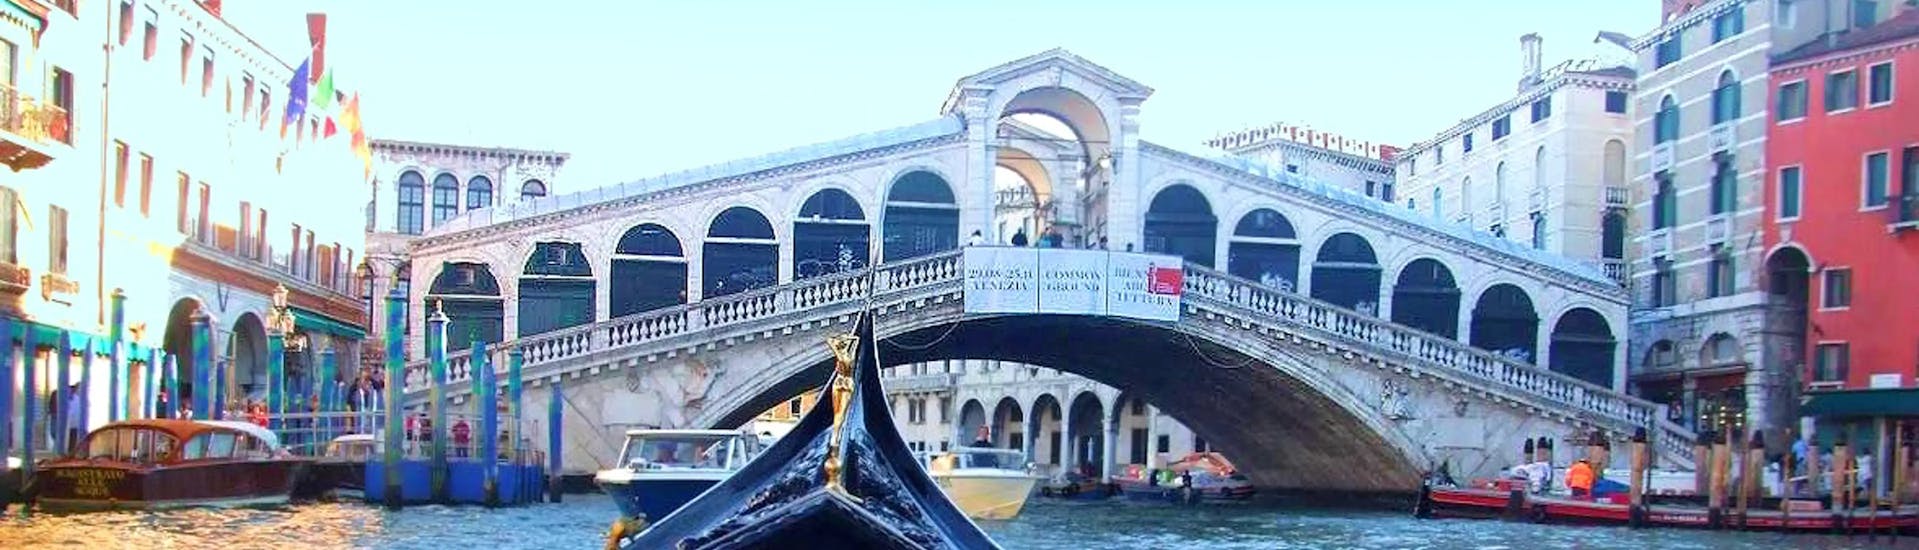 View of the Rialto bridge during Private Gondola Ride to Grand Canal & Rialto Bridge wit Agenzia Gondolieri Travel.